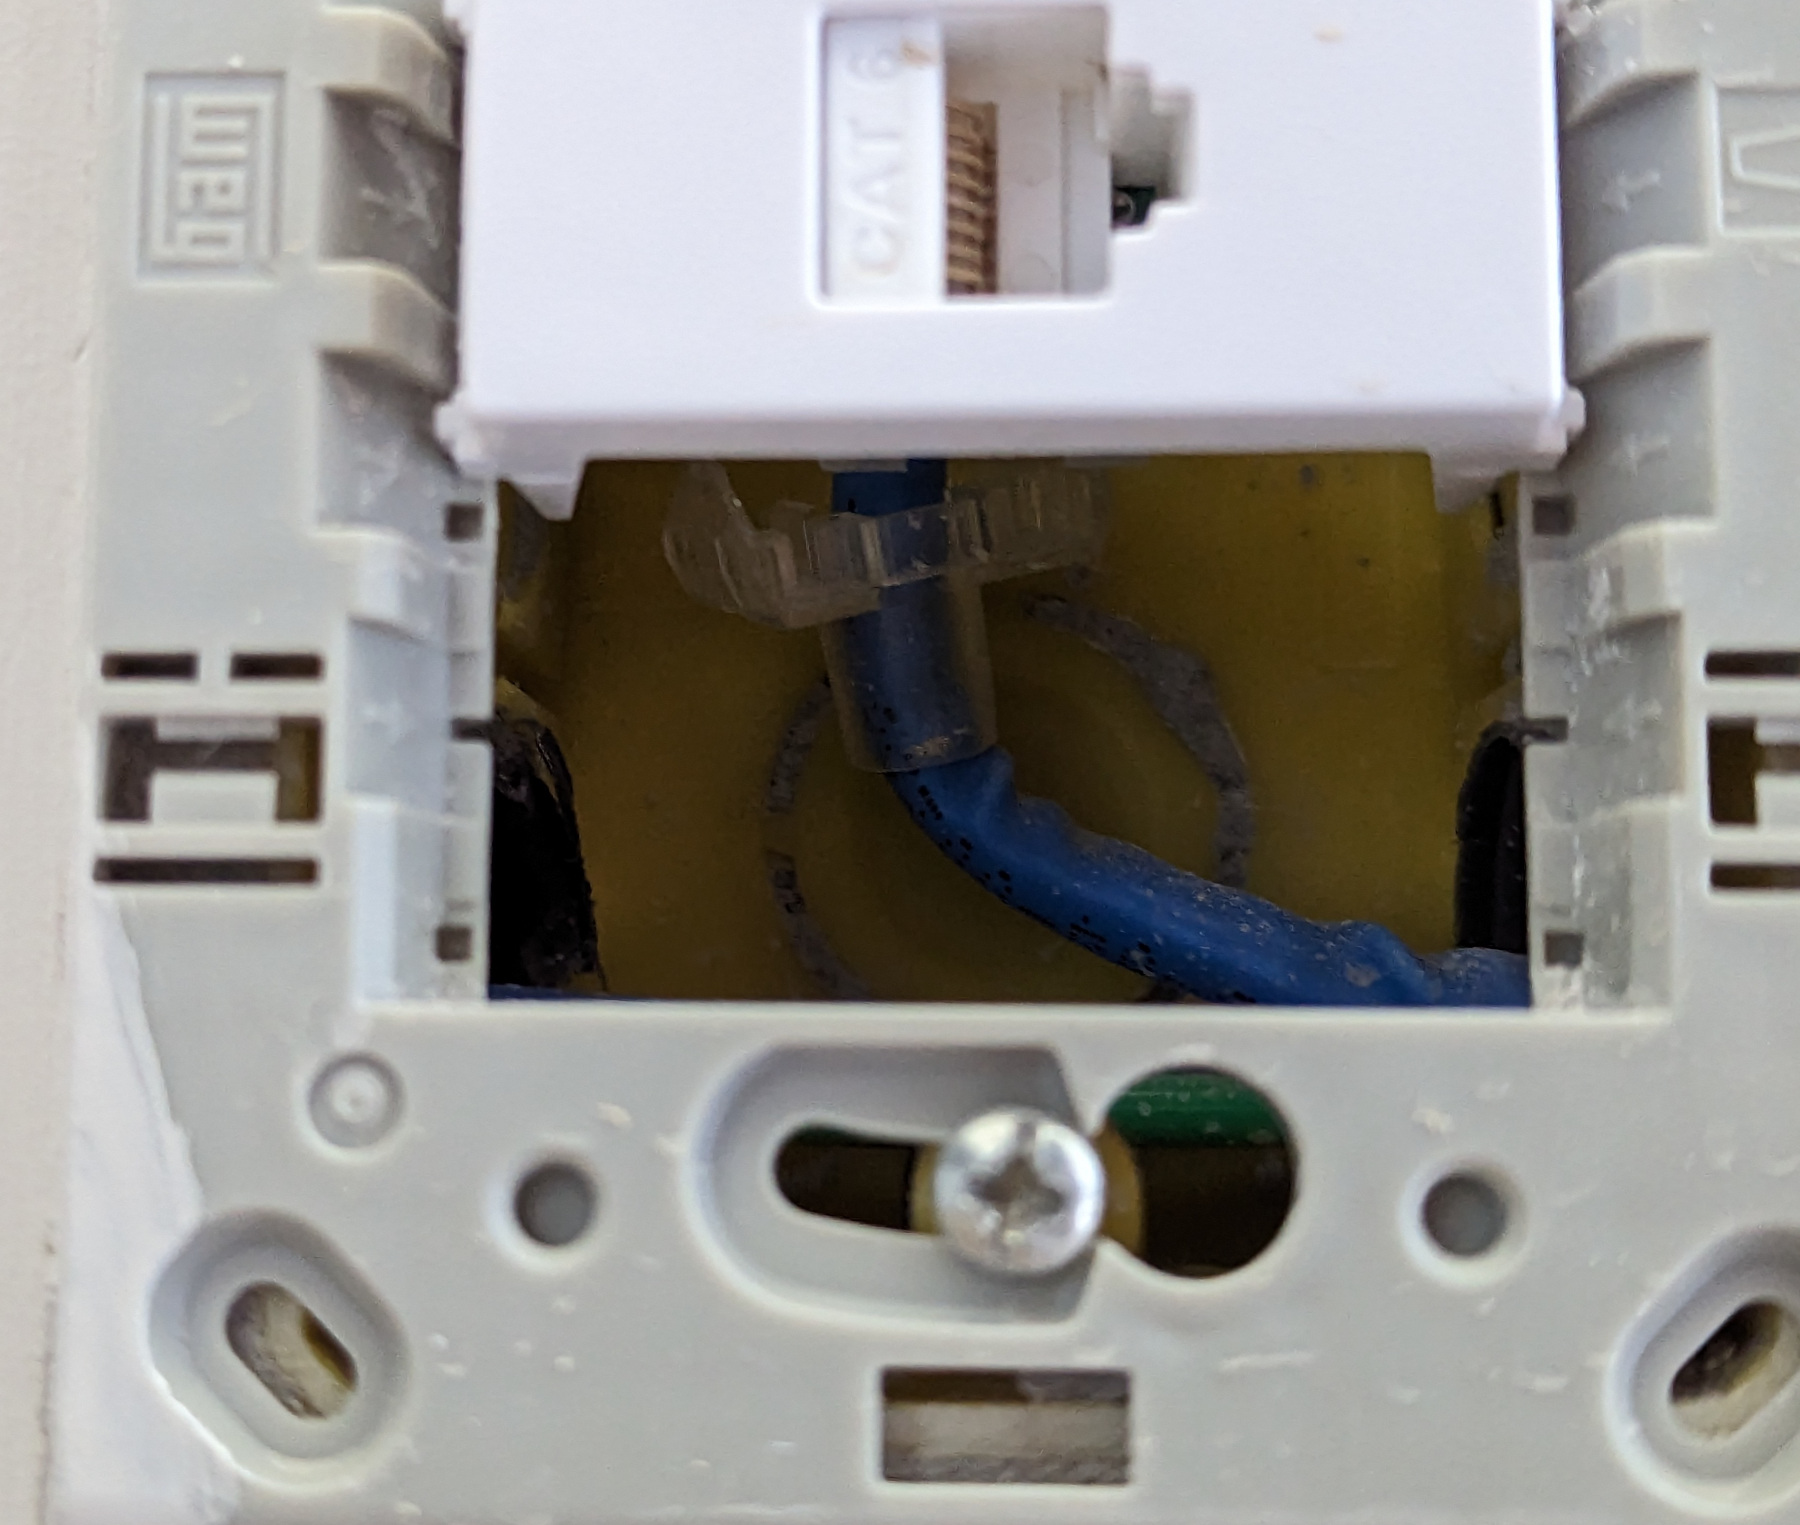 Figura 16: Numa caixa 4x2, o cabo de rede tende a ficar mal acomodado, fazendo curvas fechadas. O keystone da foto agrava o problema por crimpar os fios na traseira.